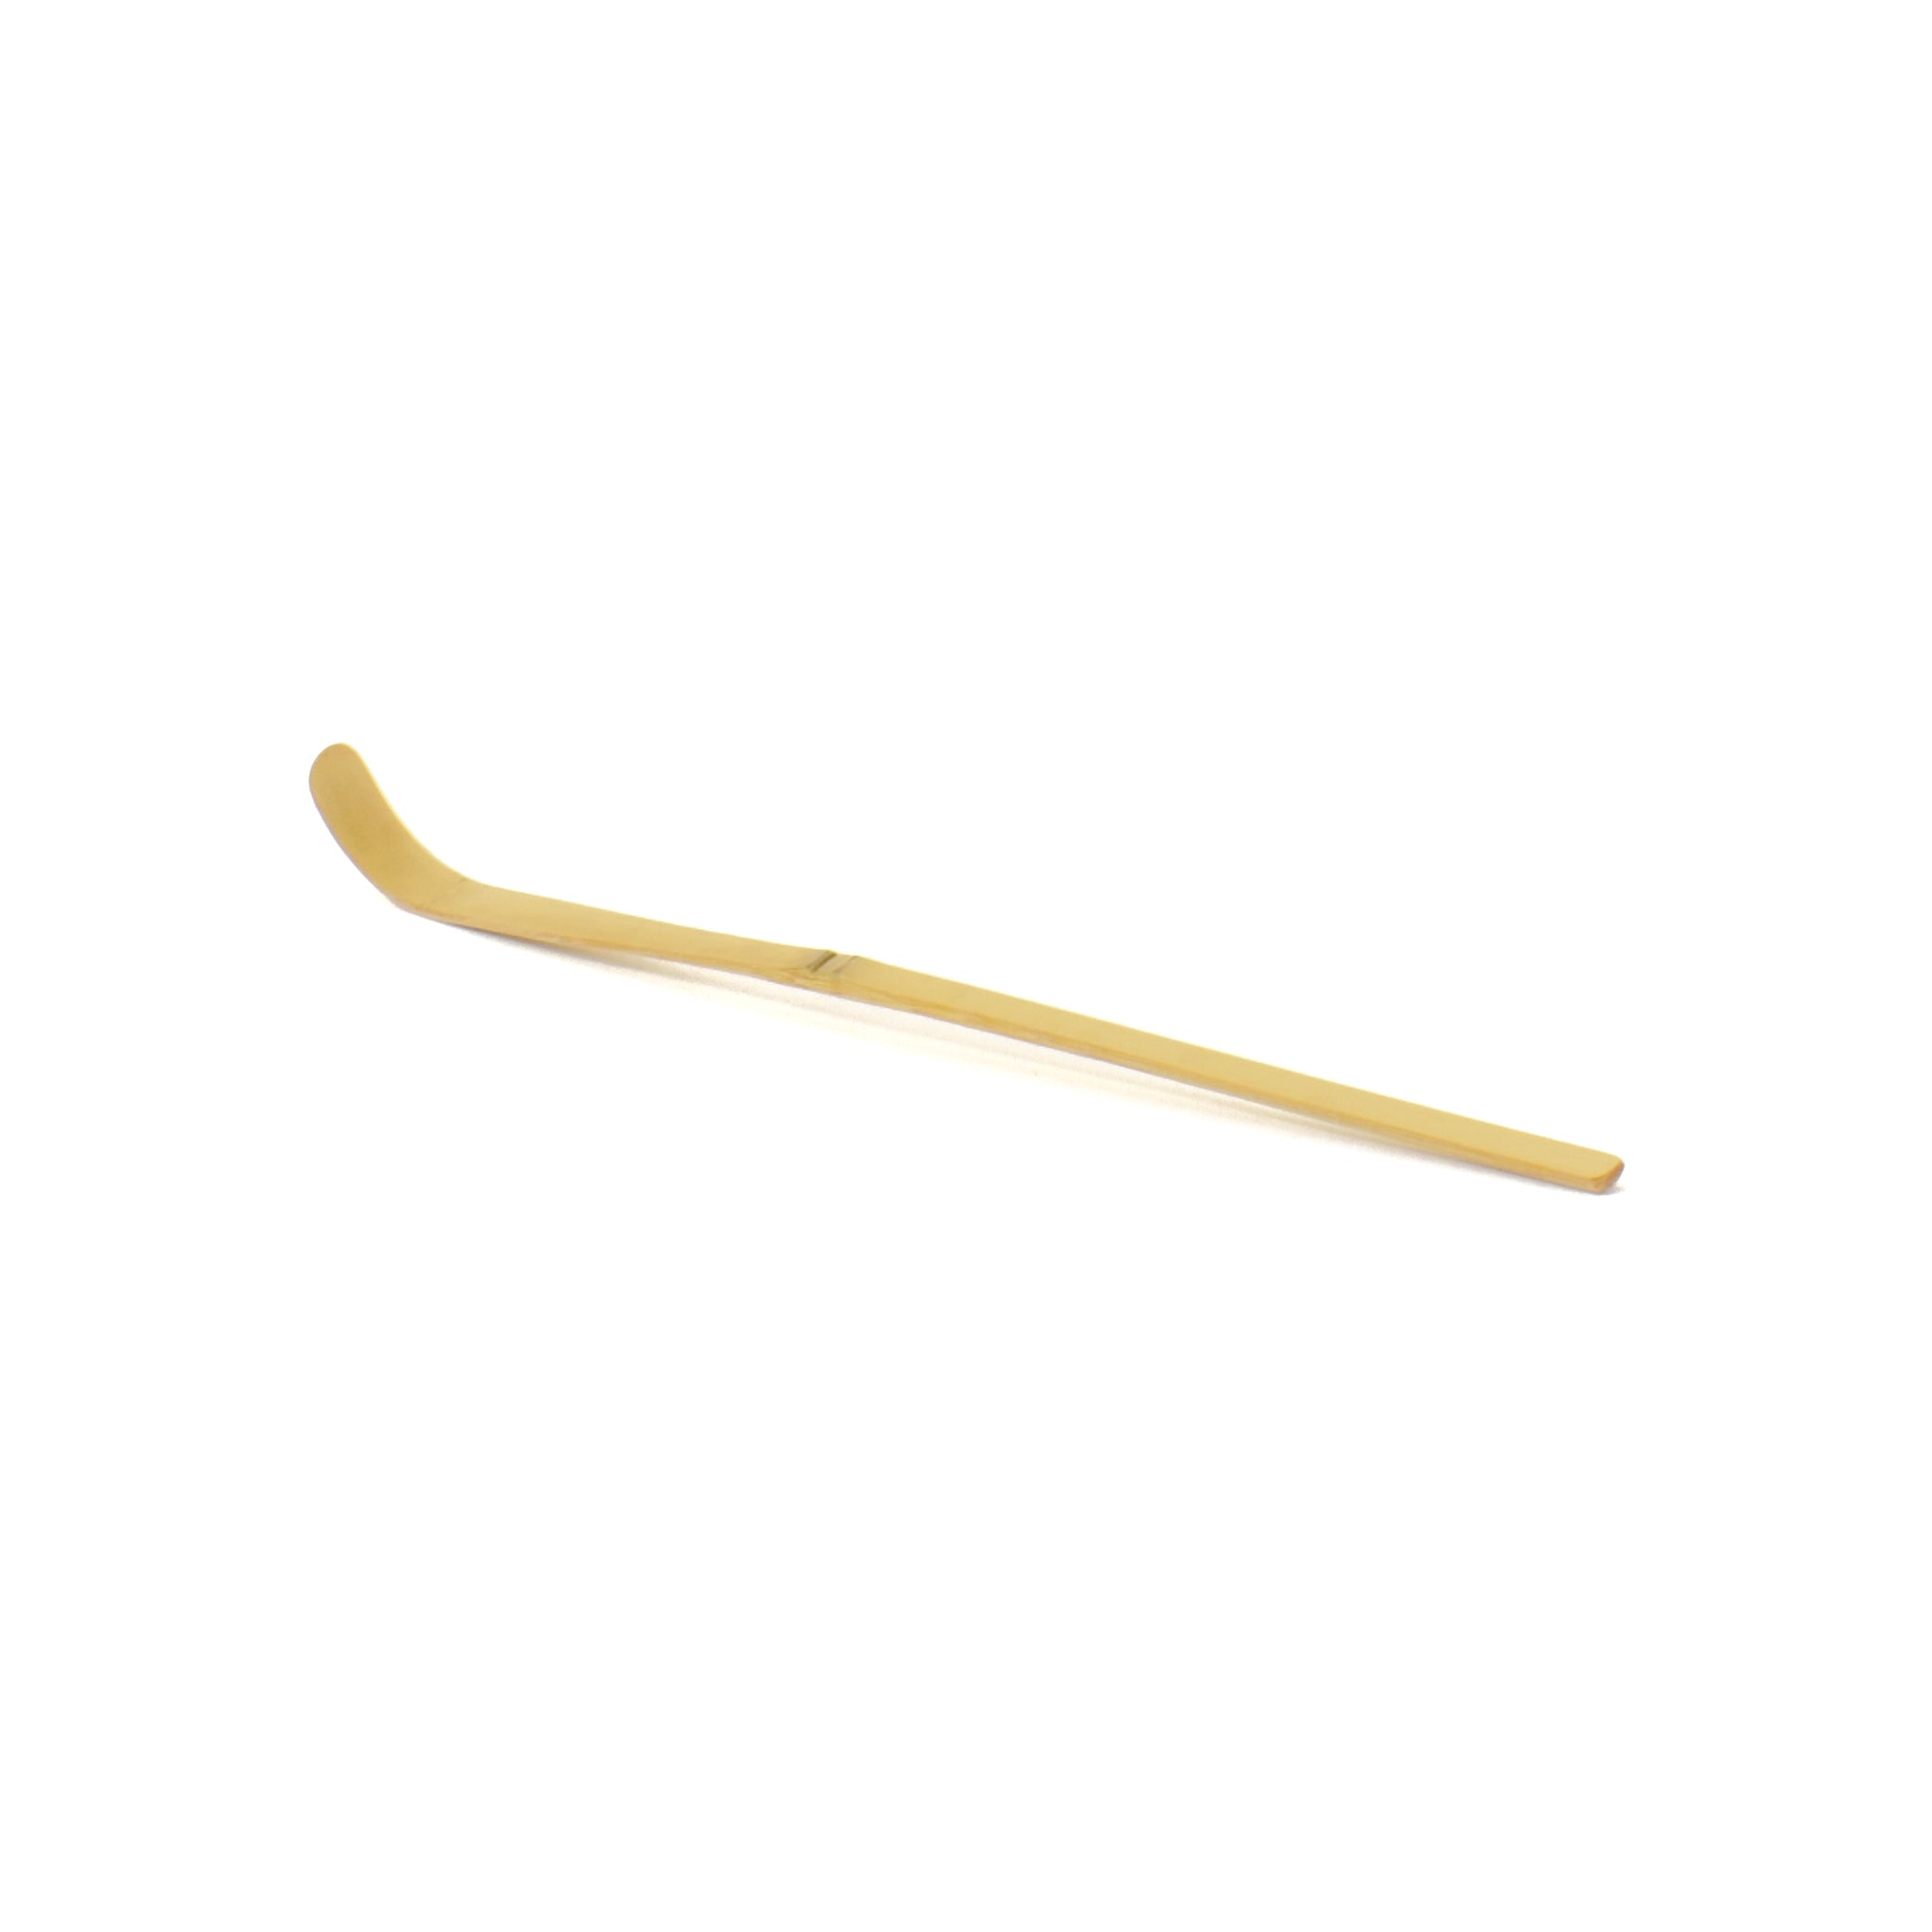 Chashaku Bamboo Matcha Spoon